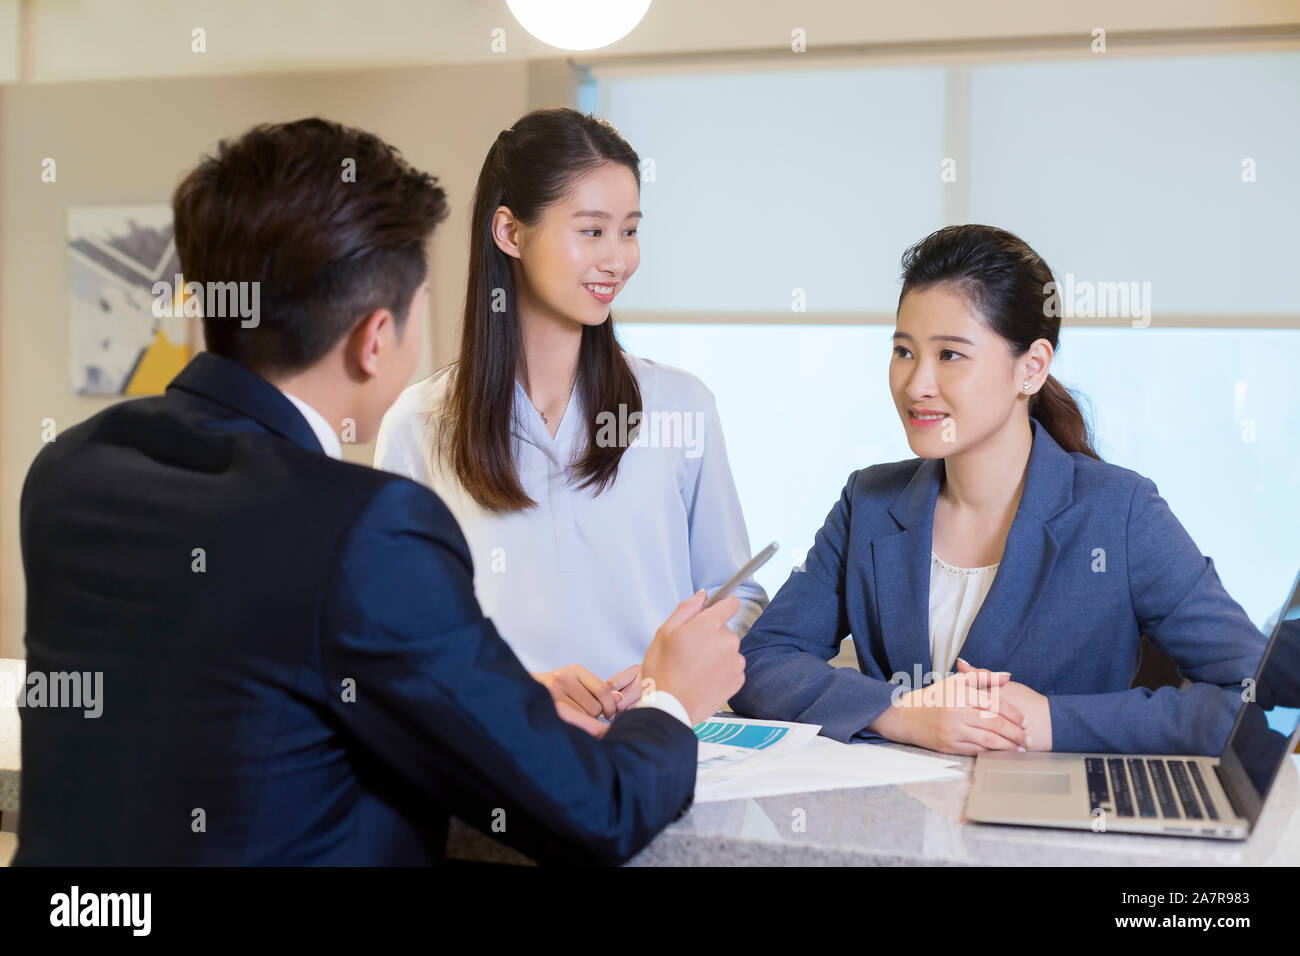 Foto von drei männliche und weibliche junge lächelnde Geschäftsleute zusammen gesprochen in einem Büro Stockfoto